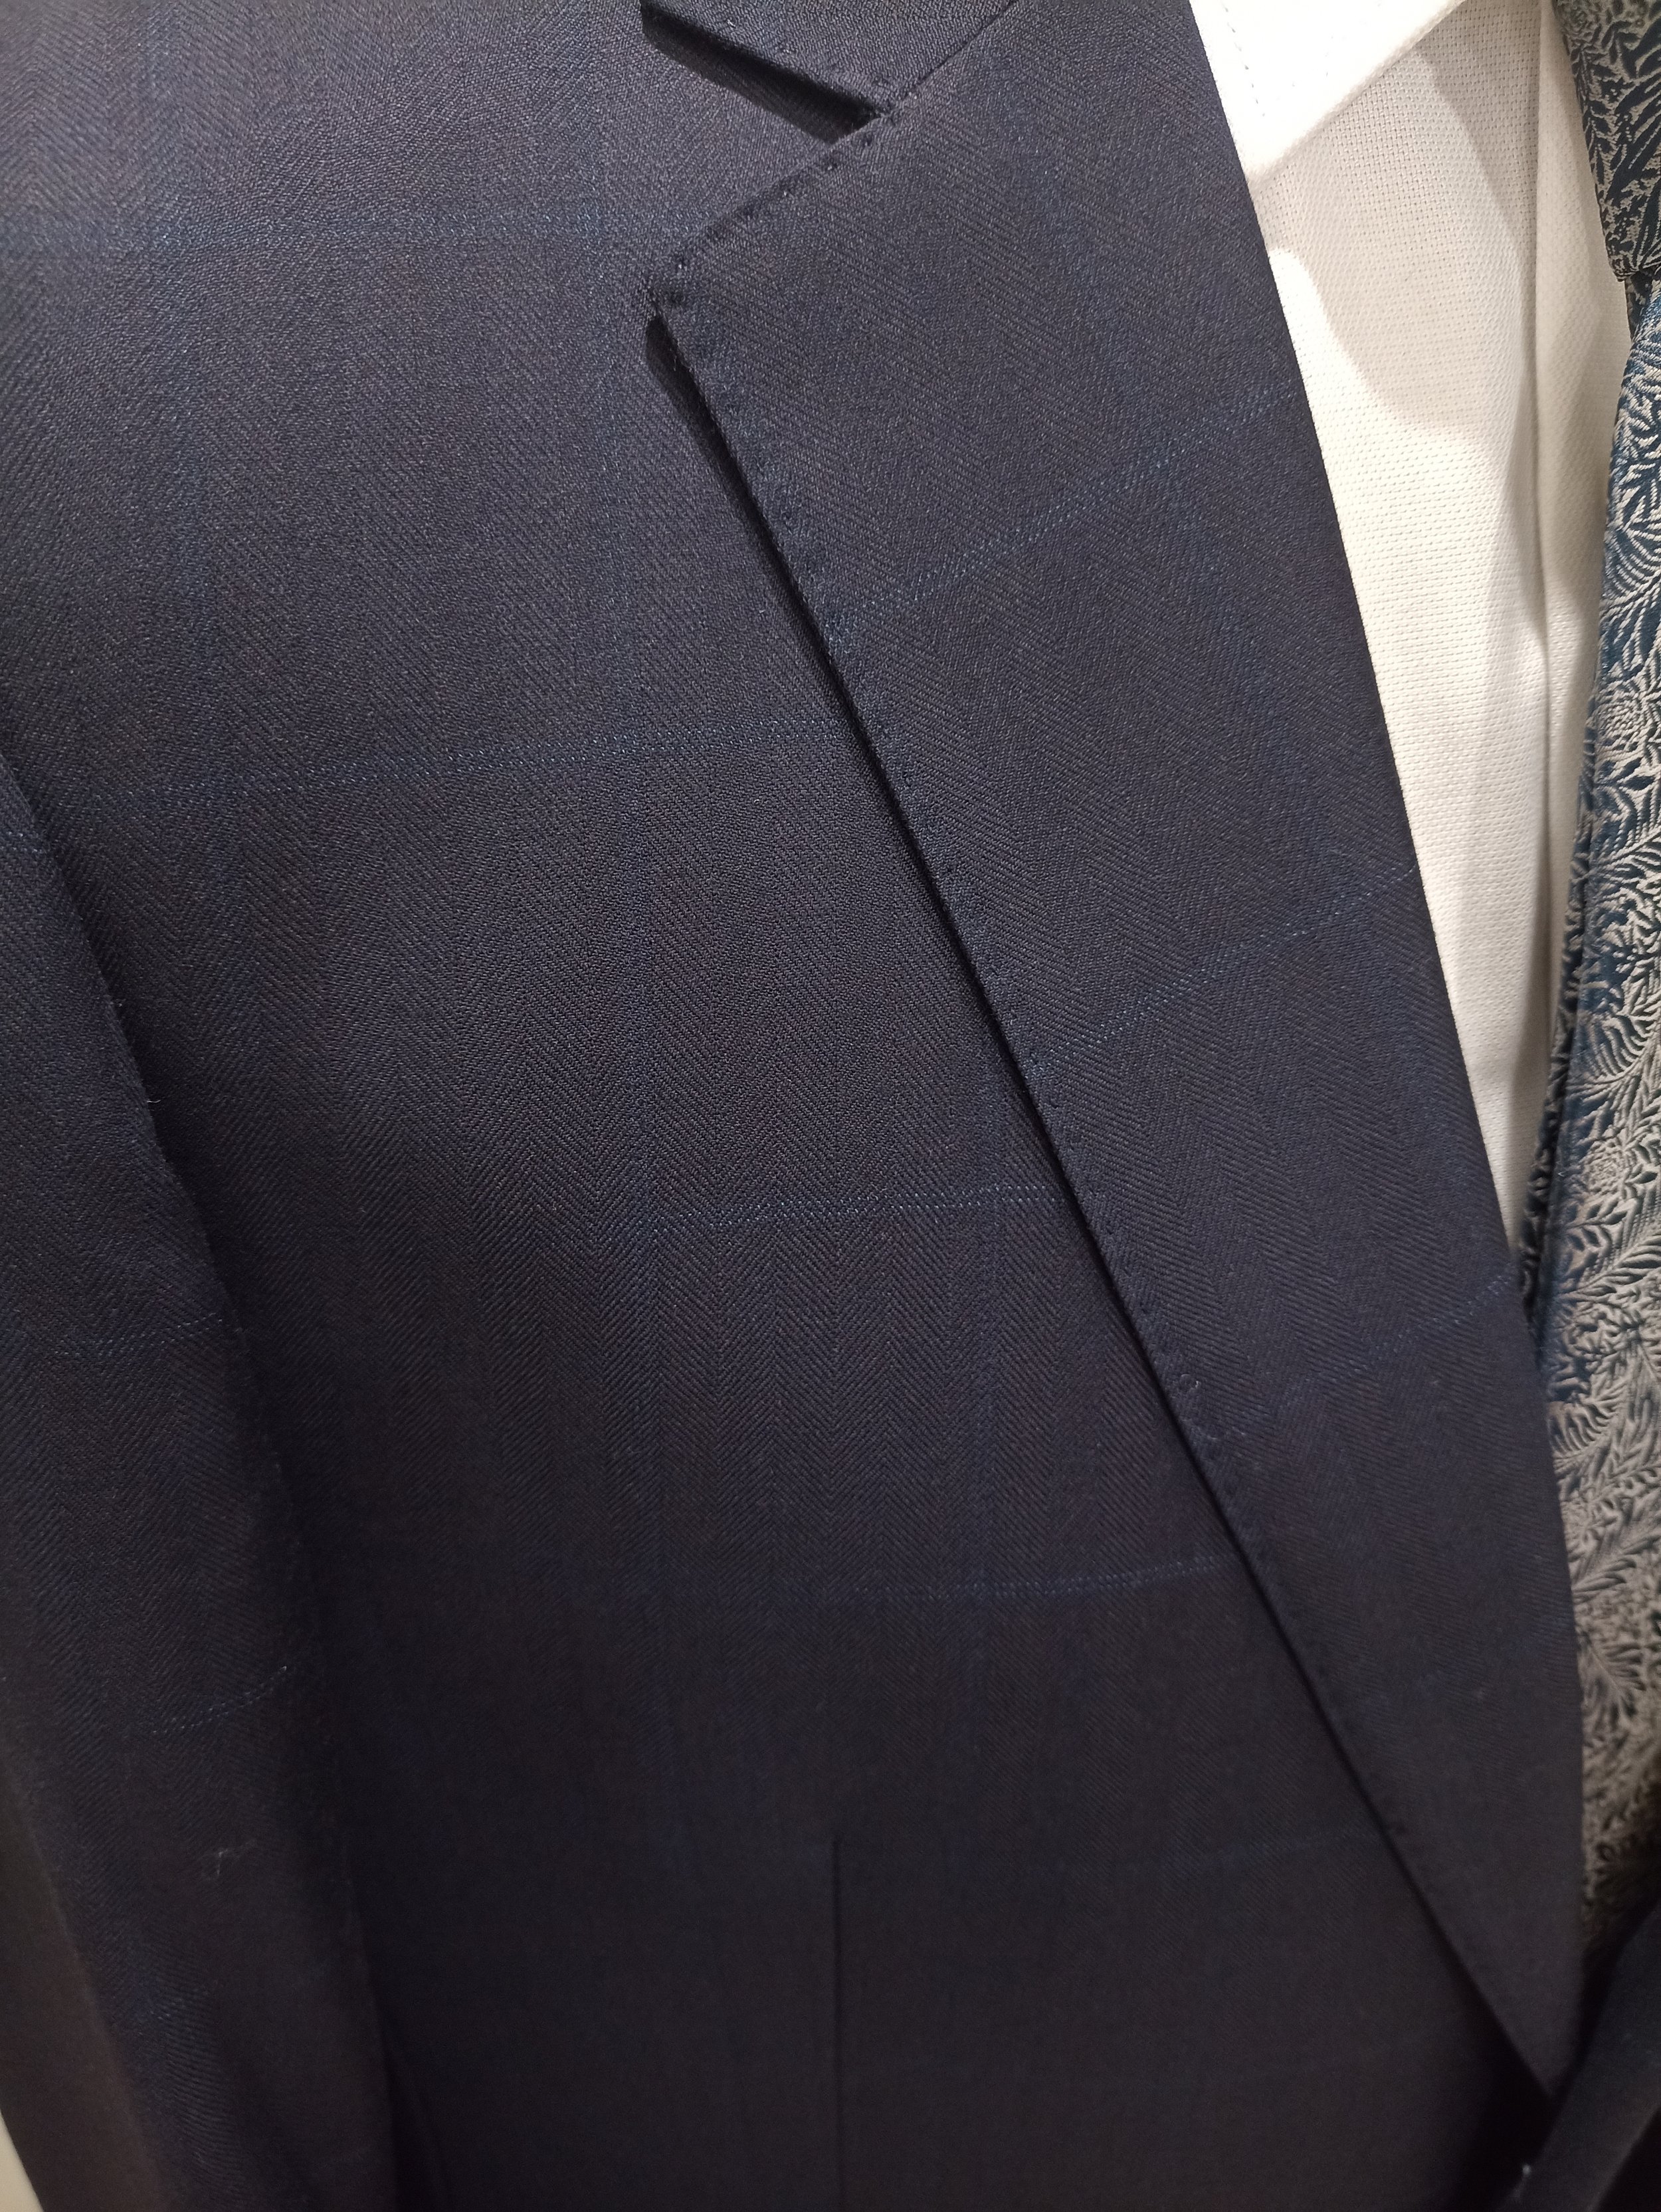 Aramis Suit Navy Ink Dot Weave — Suited Menswear